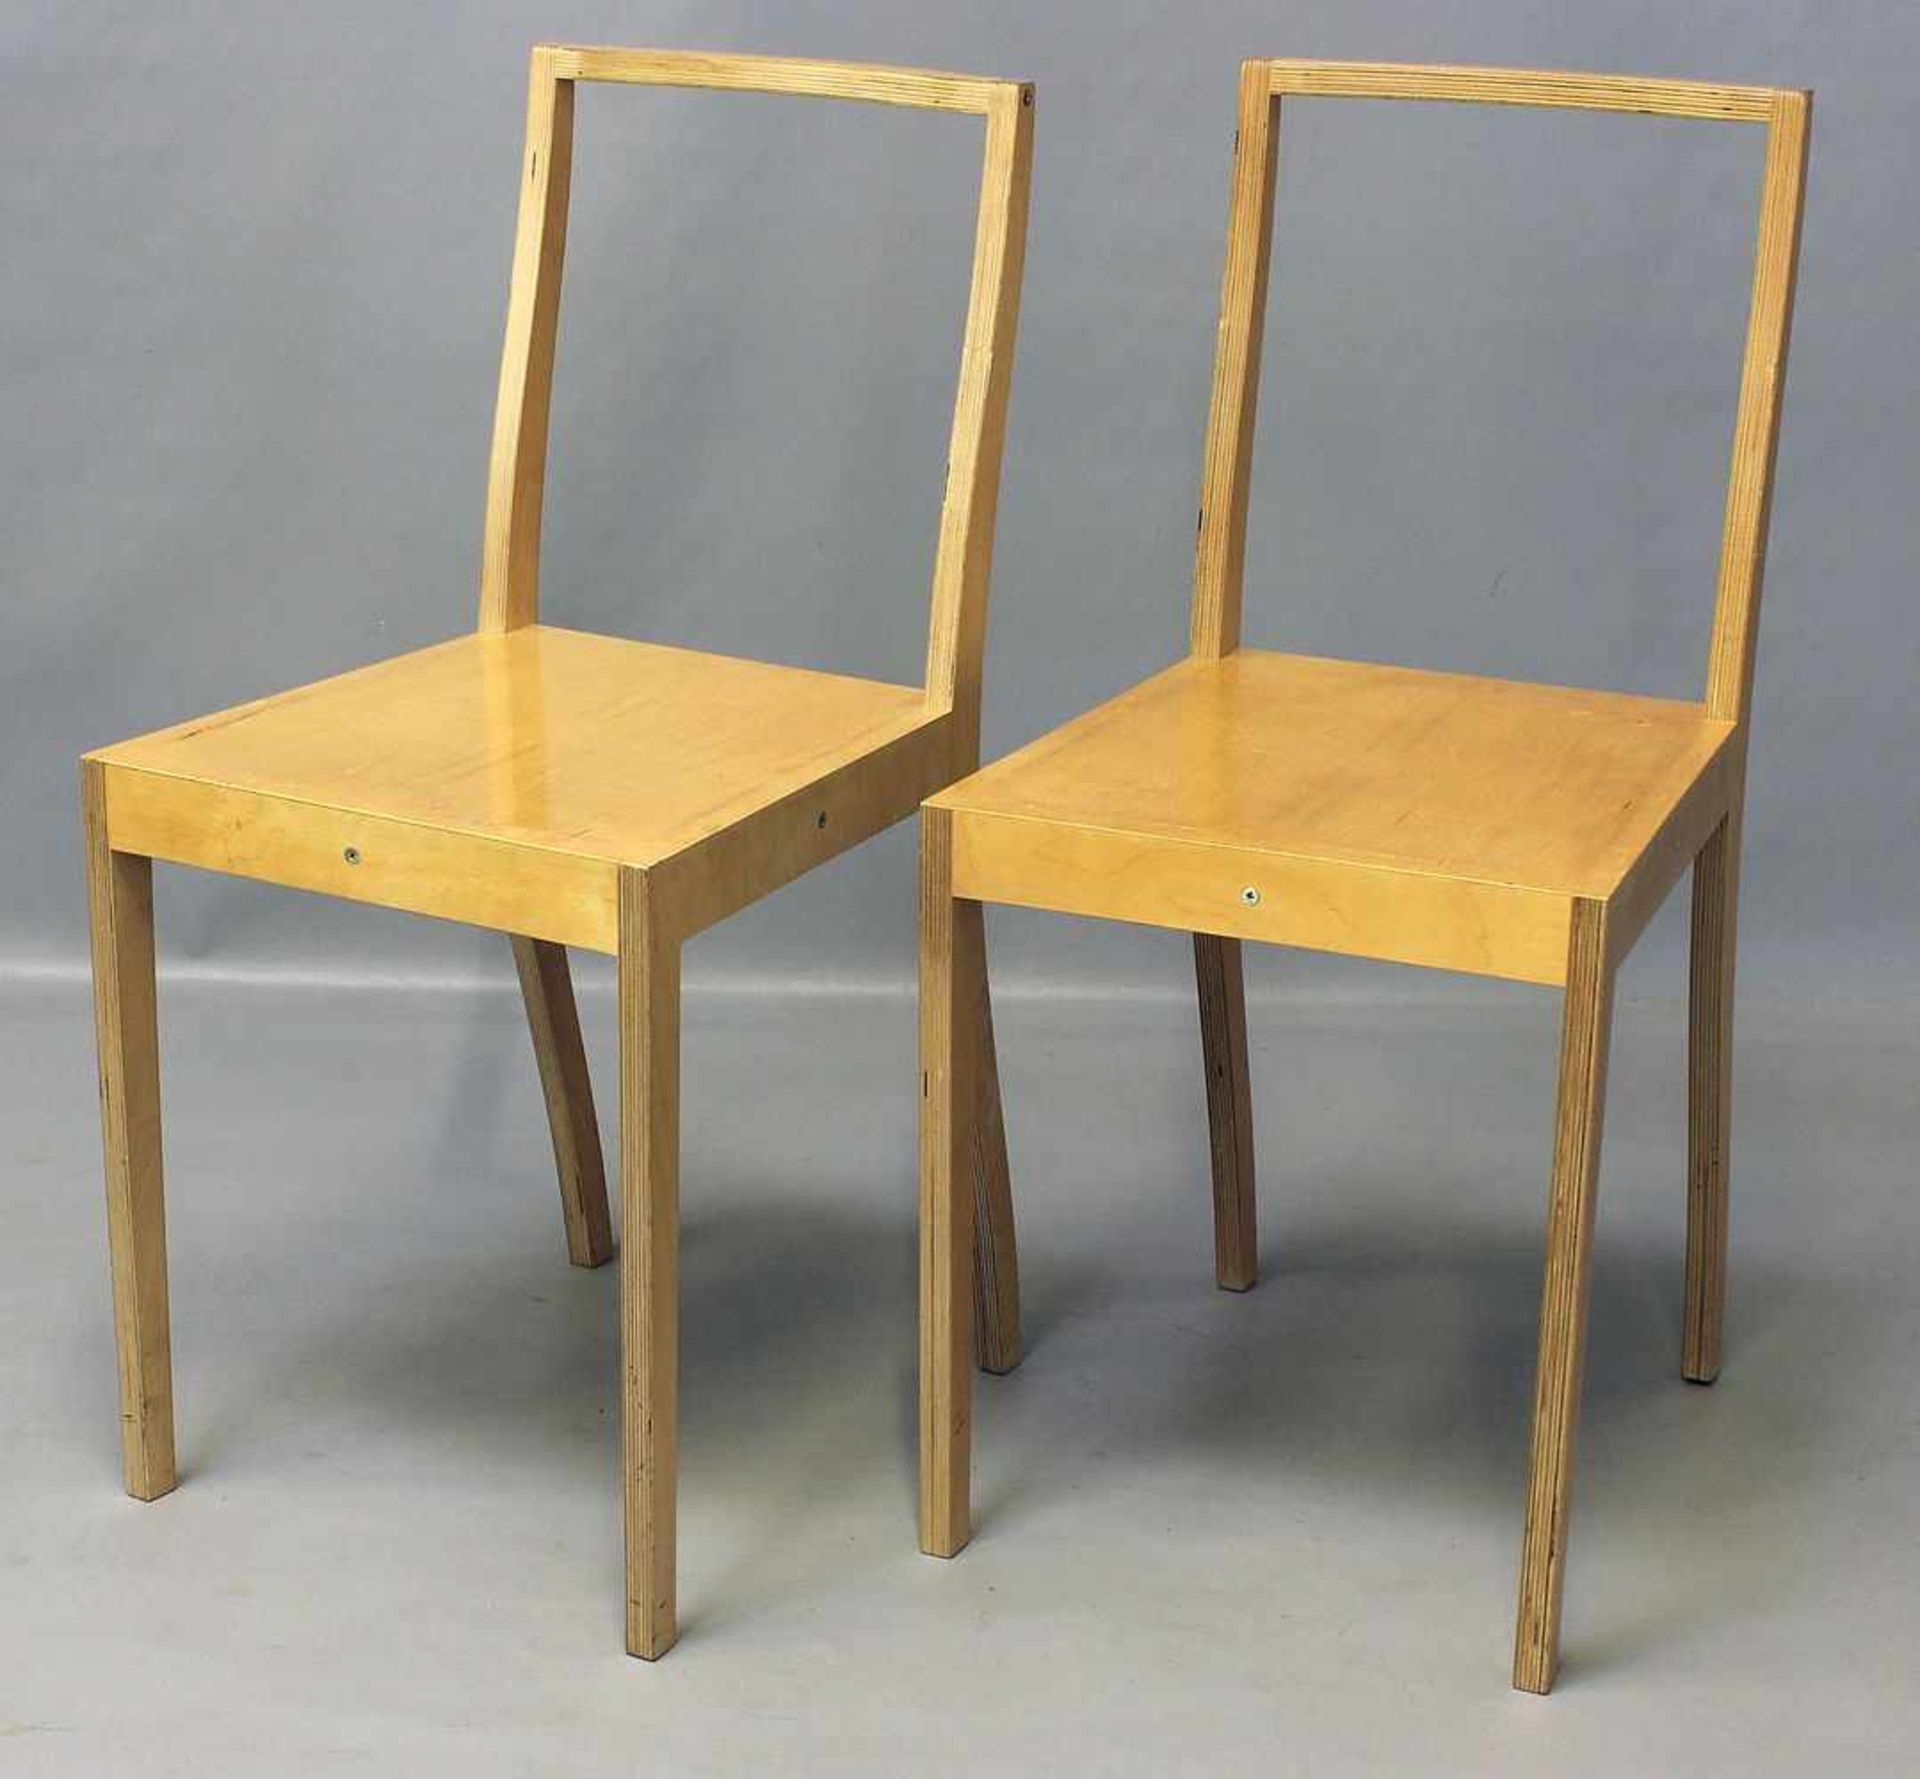 Morrison, Jasper (geb. 1959 London)Zwei Stühle "Plywood Chair". Schichtholz, verschraubt und